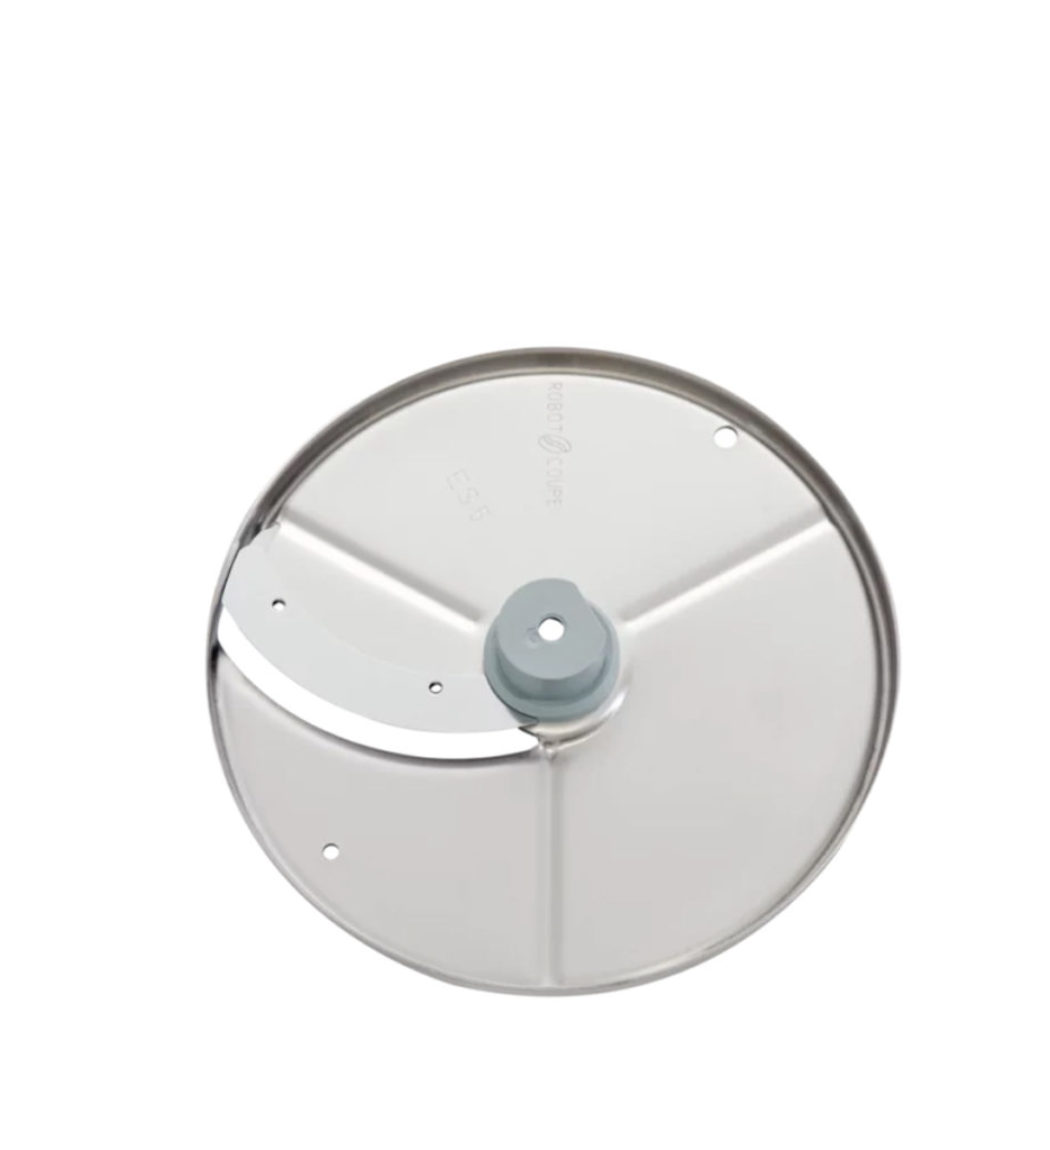 Plátkovač 5 mm | Robot Coupe disk